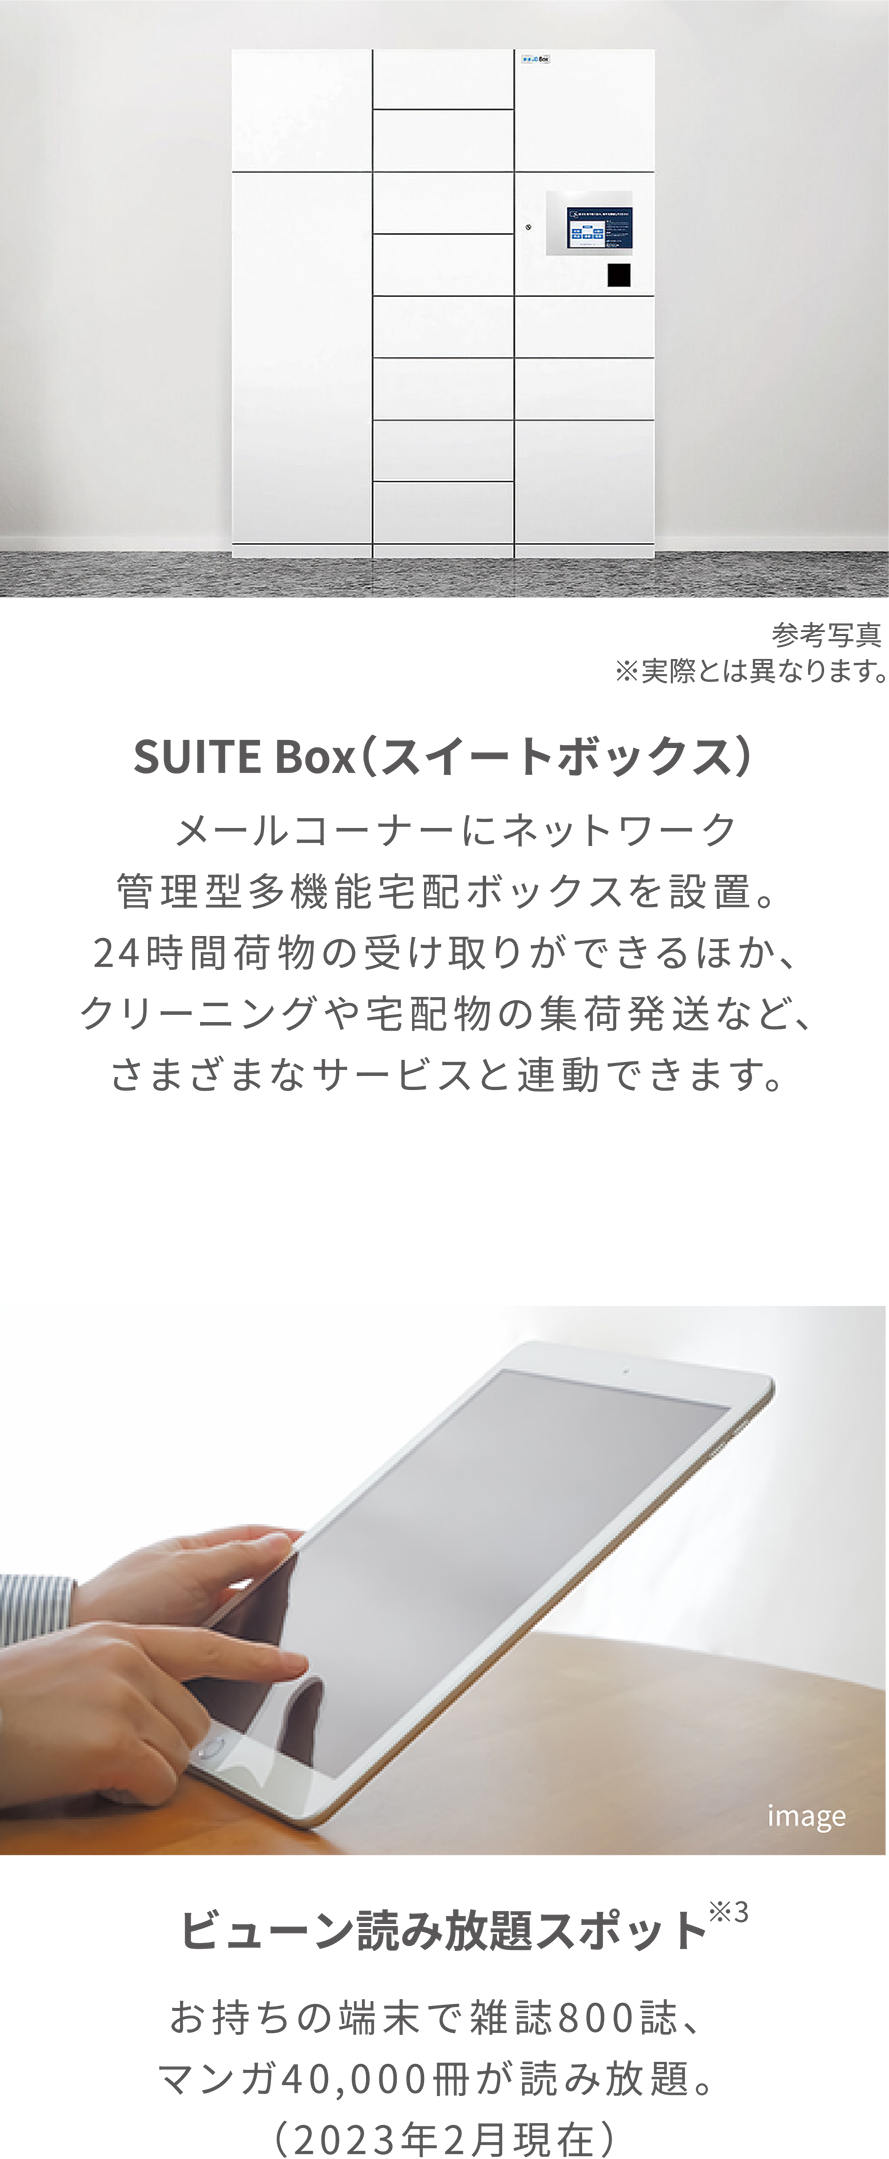 Suit box